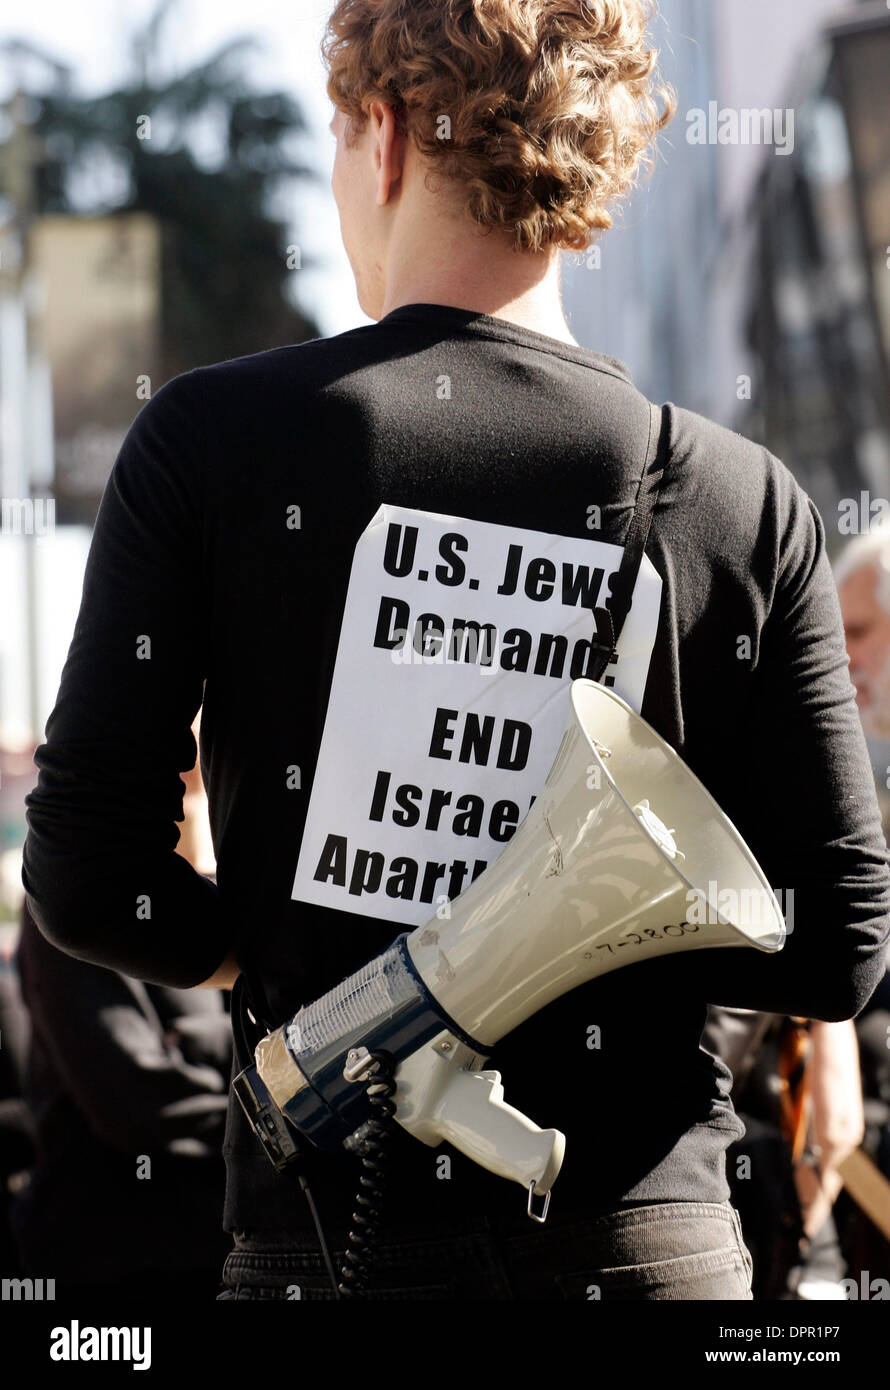 Jan 14, 2009 - Los Angeles, Californie, USA - Les activistes juifs opposés au gouvernement israélien continue d'opérations militaires dans la bande de Gaza se sont enchaînés à l'immeuble abritant le consulat israélien à Los Angeles. Les membres de l'International Jewish Anti-Zionist Network a causé la fermeture de Wilshire Blvd de Los Angeles, mais a mis fin à la police de Los Angeles avant de protester de façon pacifique Banque D'Images